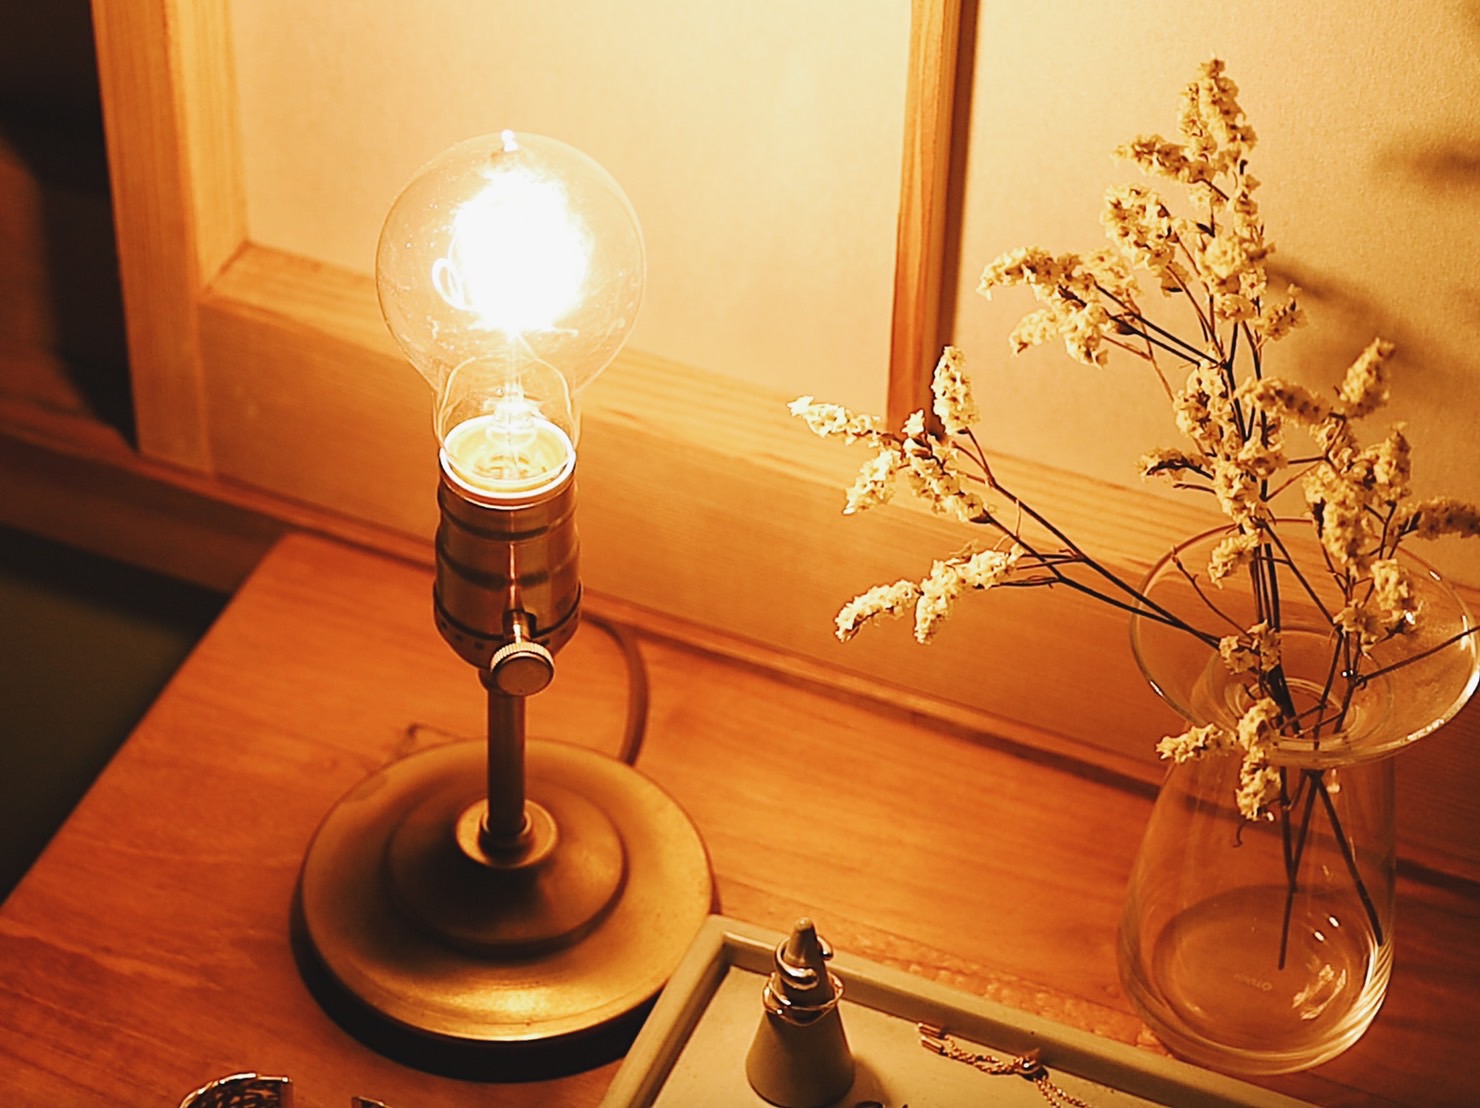 ネジの部分で明るさが二段階に調整できる真鍮のスタンド。別売りのエジソンランプを取り付けられ、アレンジもできちゃいます。和室のあるお部屋に住む際に真似したいアイテムのひとつです。ちなみに、ランプの見た目の可愛さと暖色系の明かりに癒され、就寝前の時間が充実したんだとか。(このお部屋を見る)